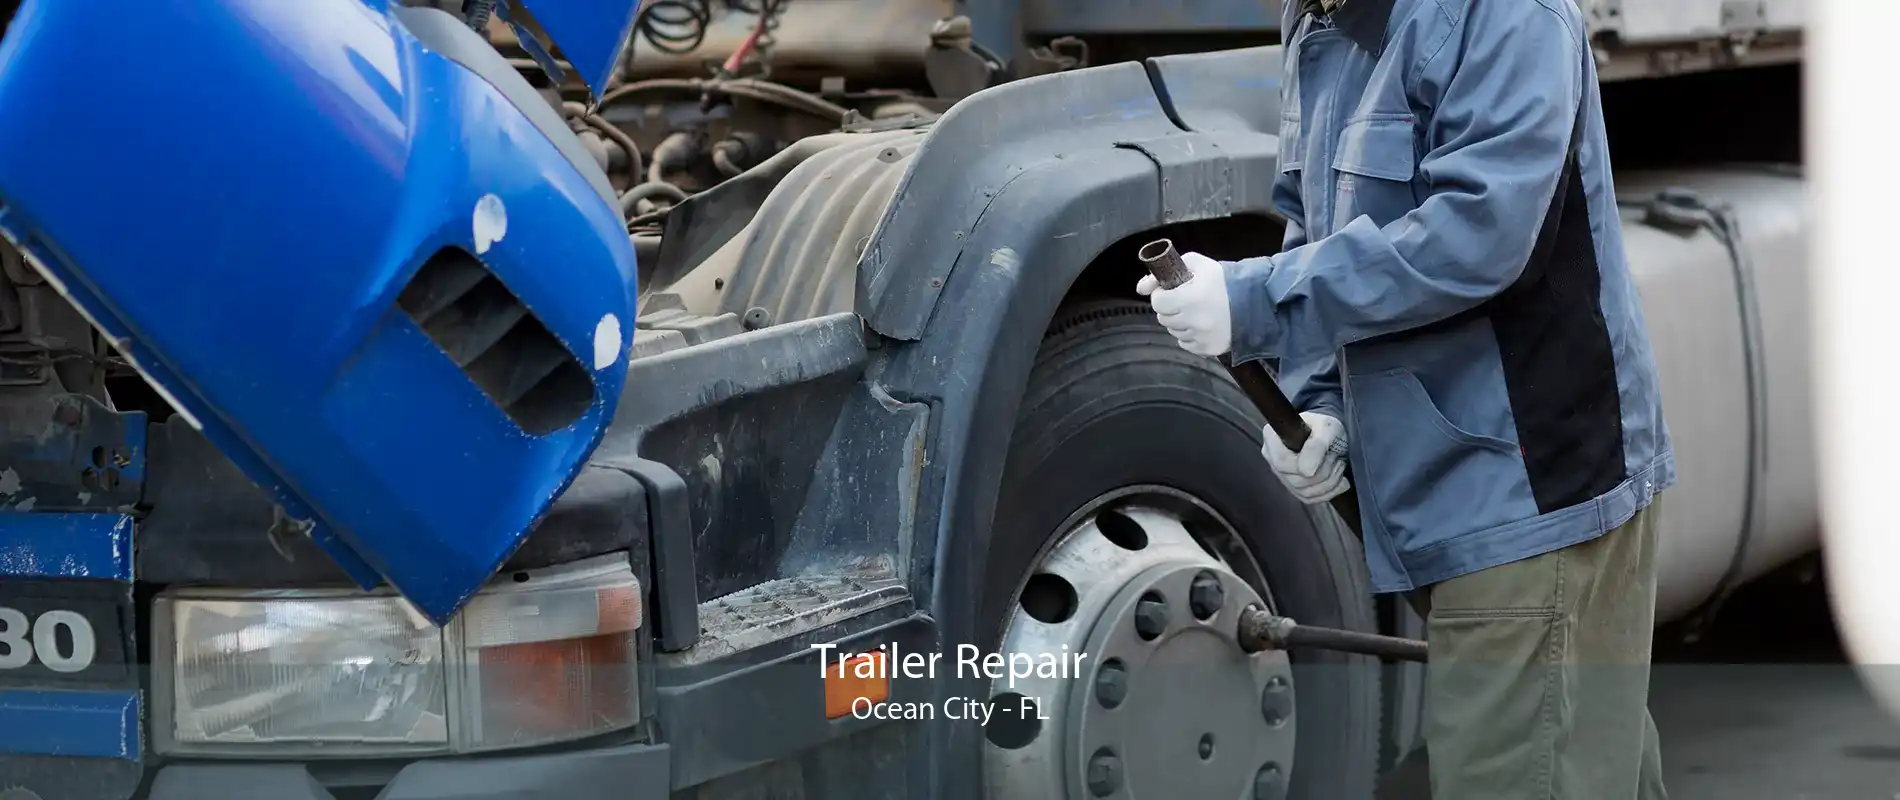 Trailer Repair Ocean City - FL